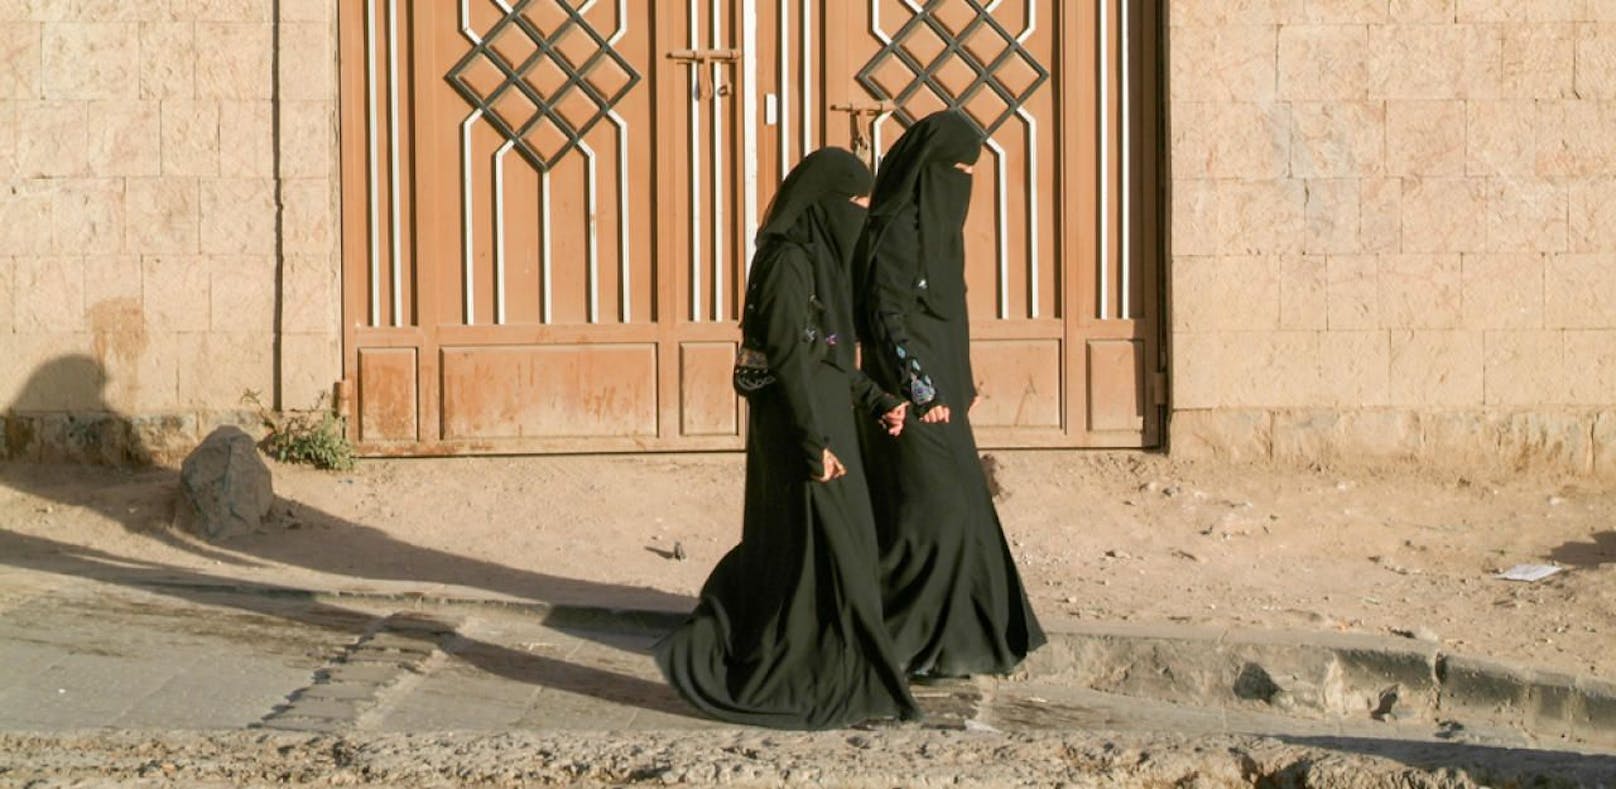 Urteil: Burka-Verbot bricht kein Menschenrecht